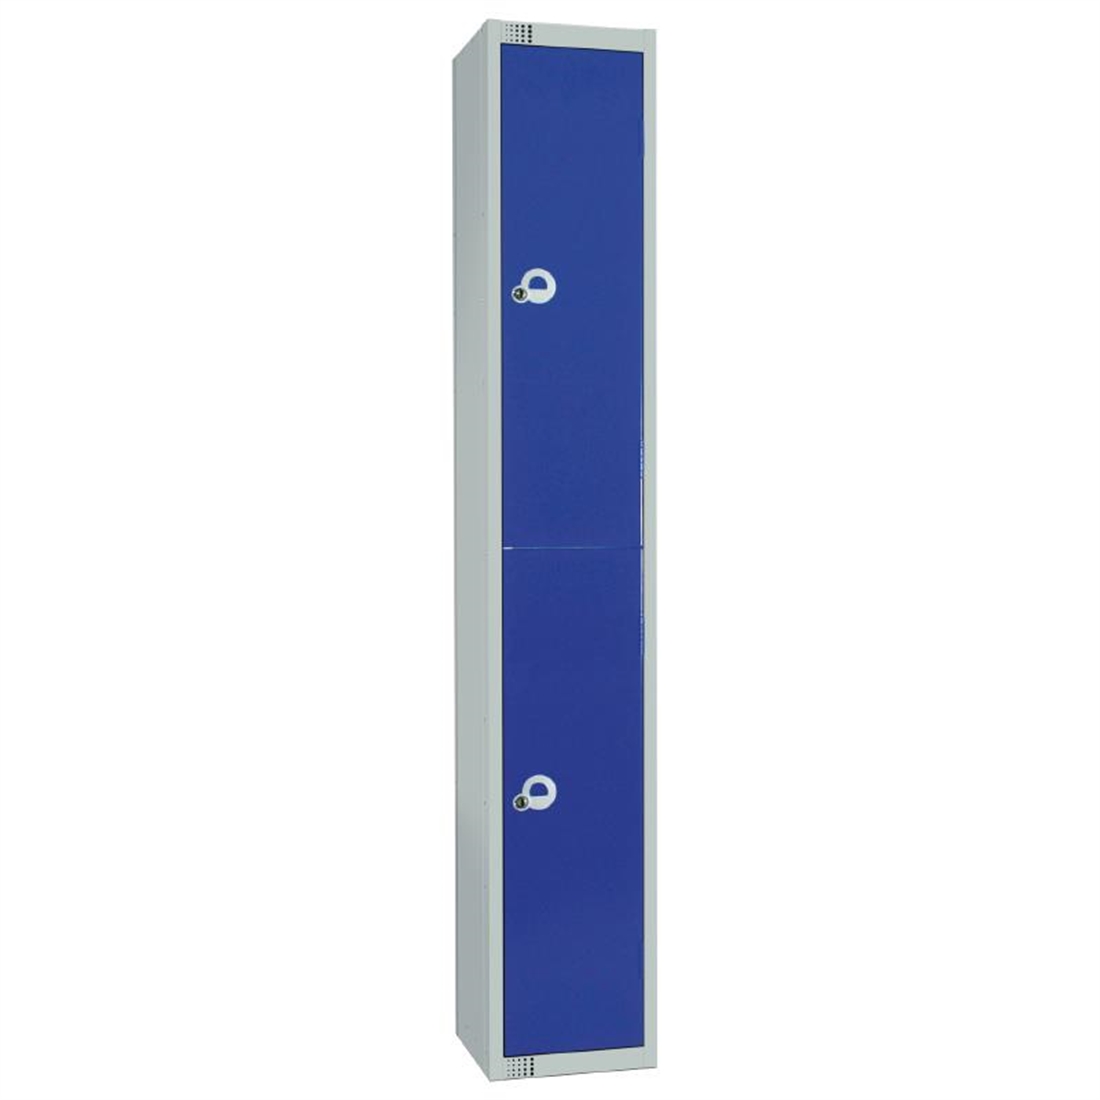 Elite Double Door Manual Combination Locker Locker Blue with Sloping Top